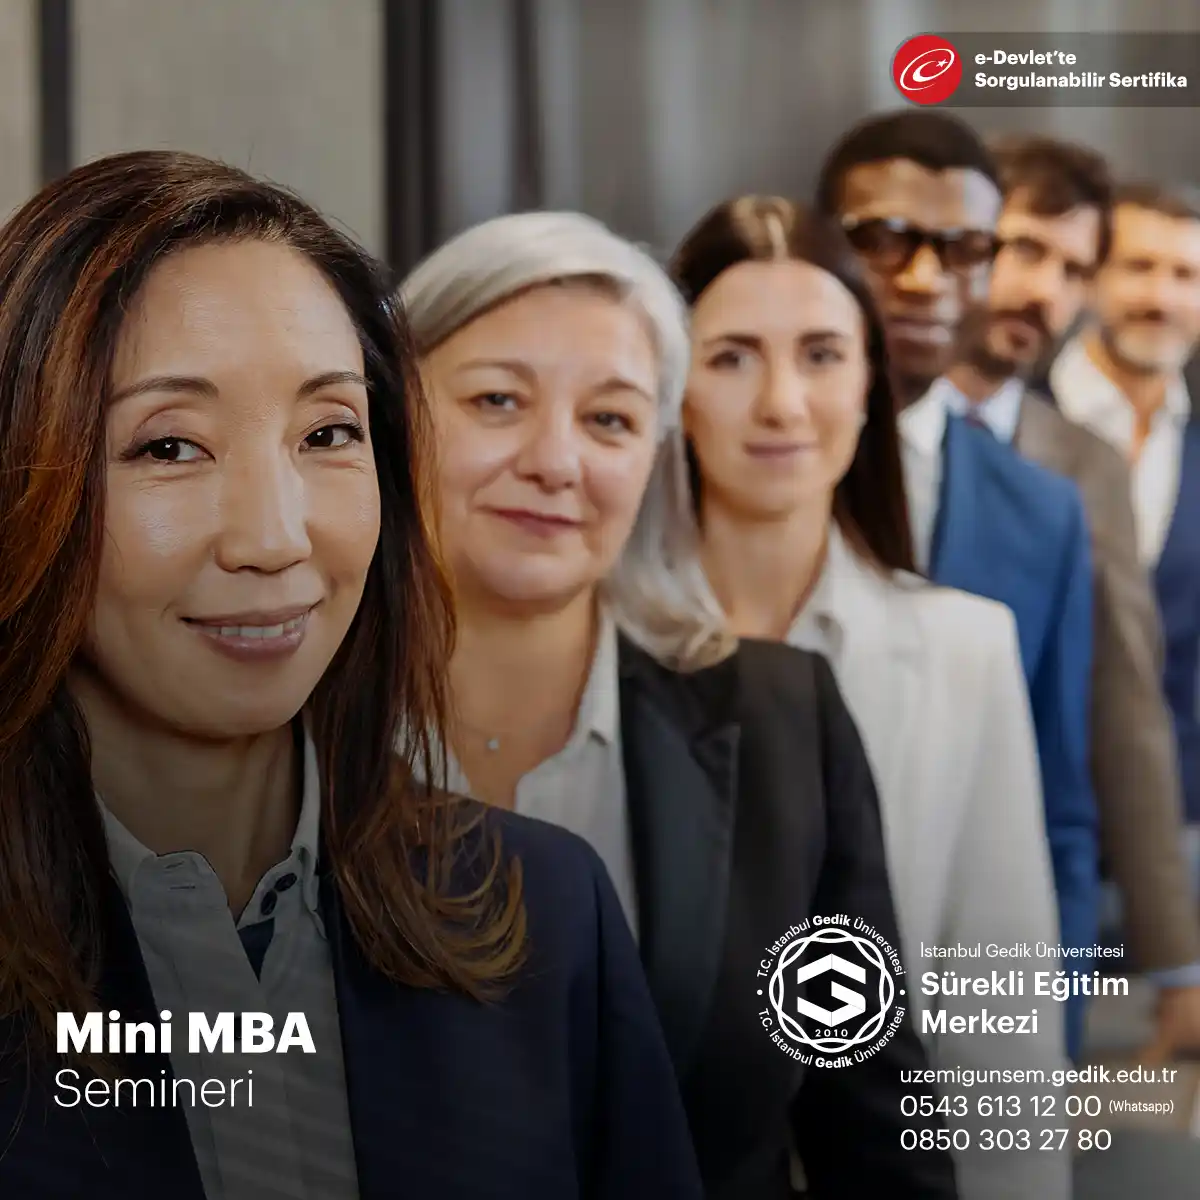 Mini MBA programları, zaman veya kaynak kısıtlaması olan profesyoneller için idealdir ve kariyer gelişimi için hızlı bir yol sunar.